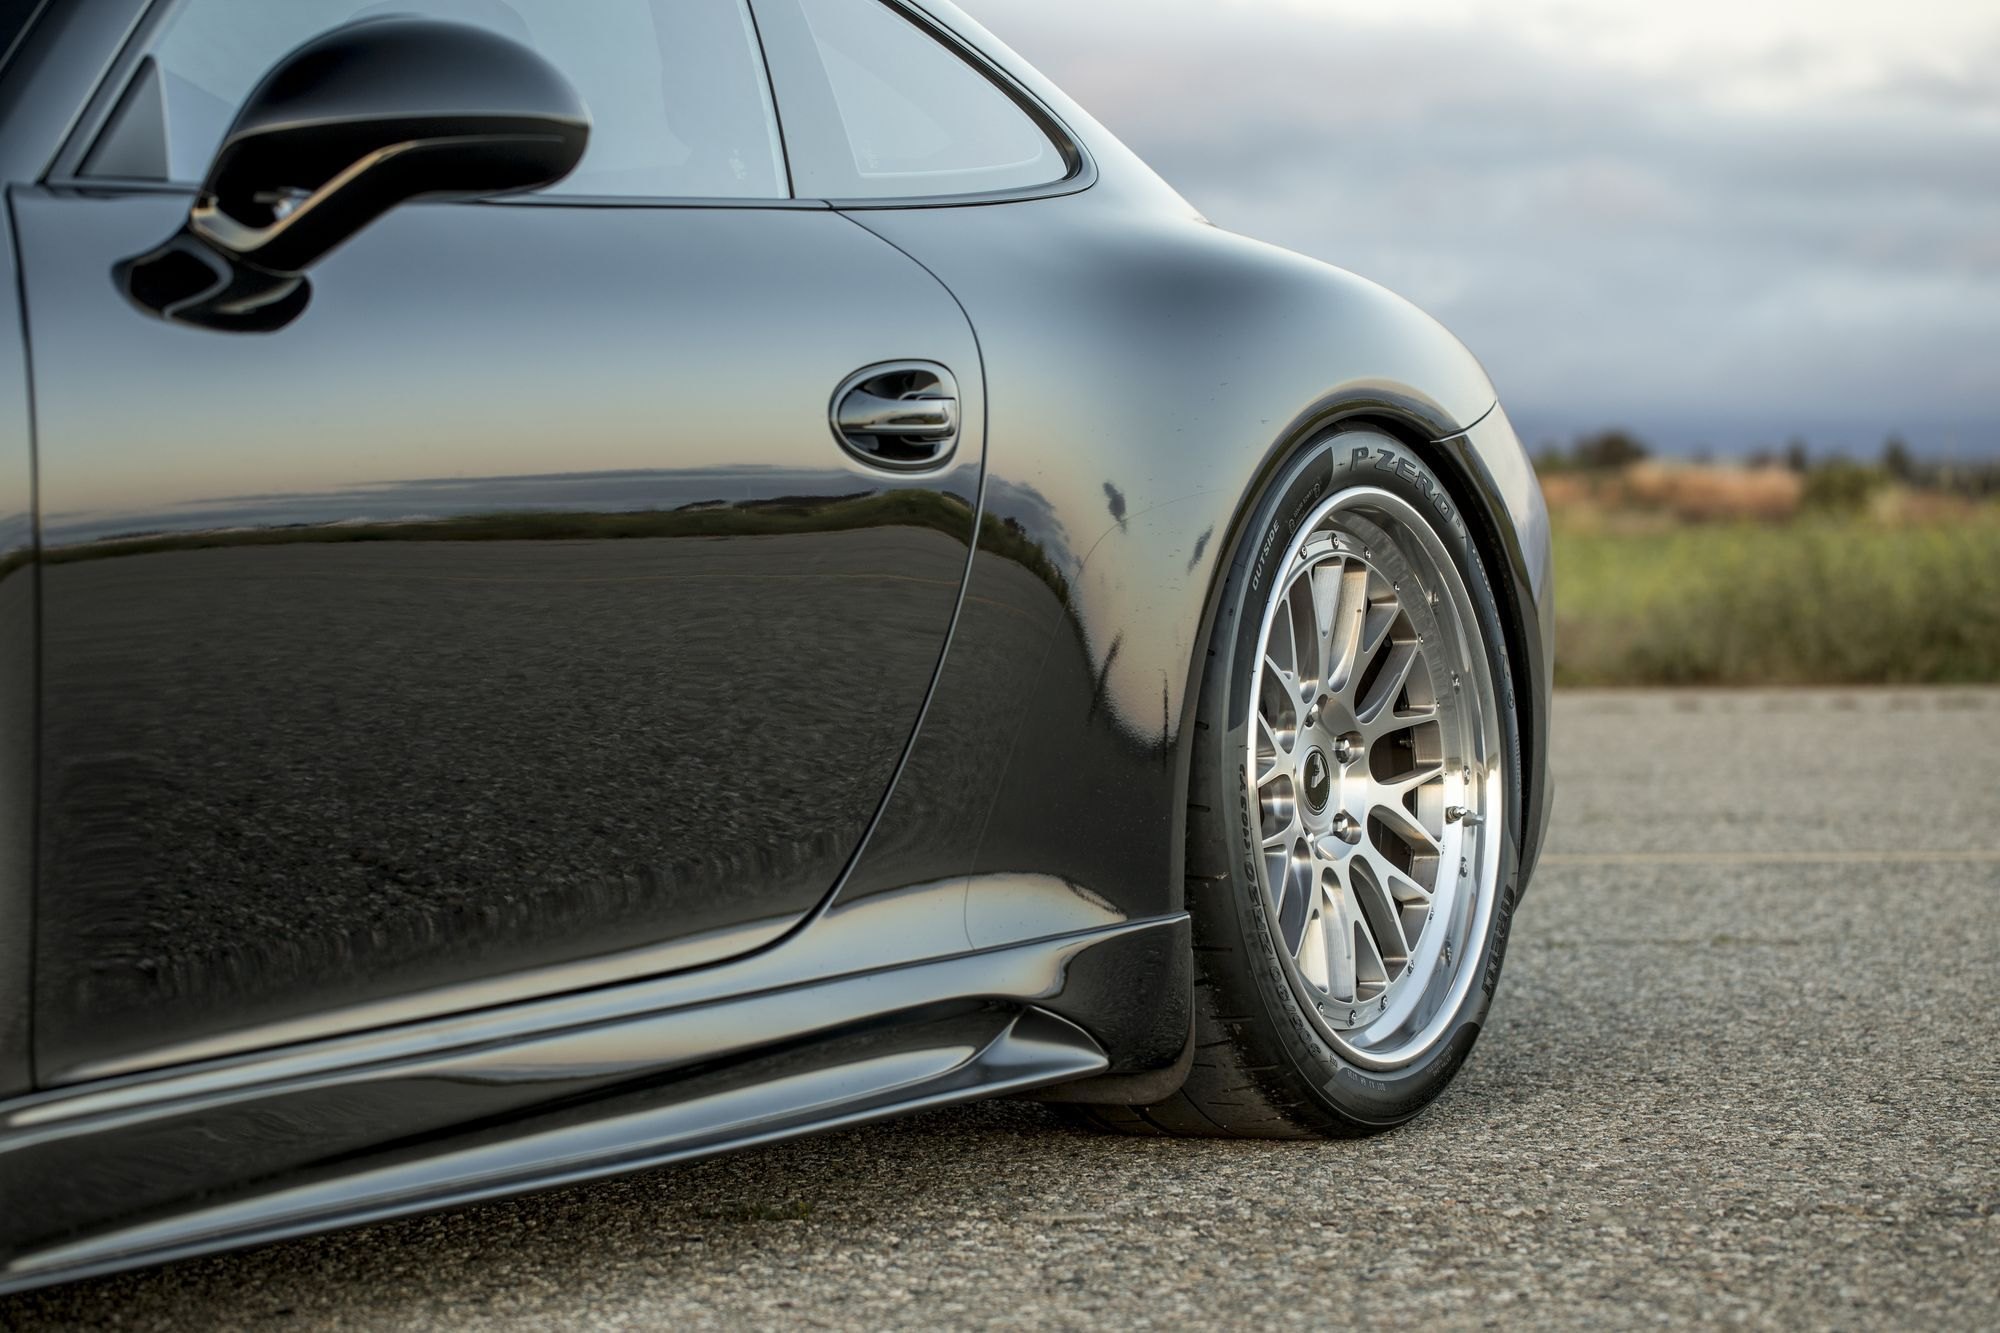 Pirelli P Zero Tires on Black Porsche 911 - Photo by Vorstiner